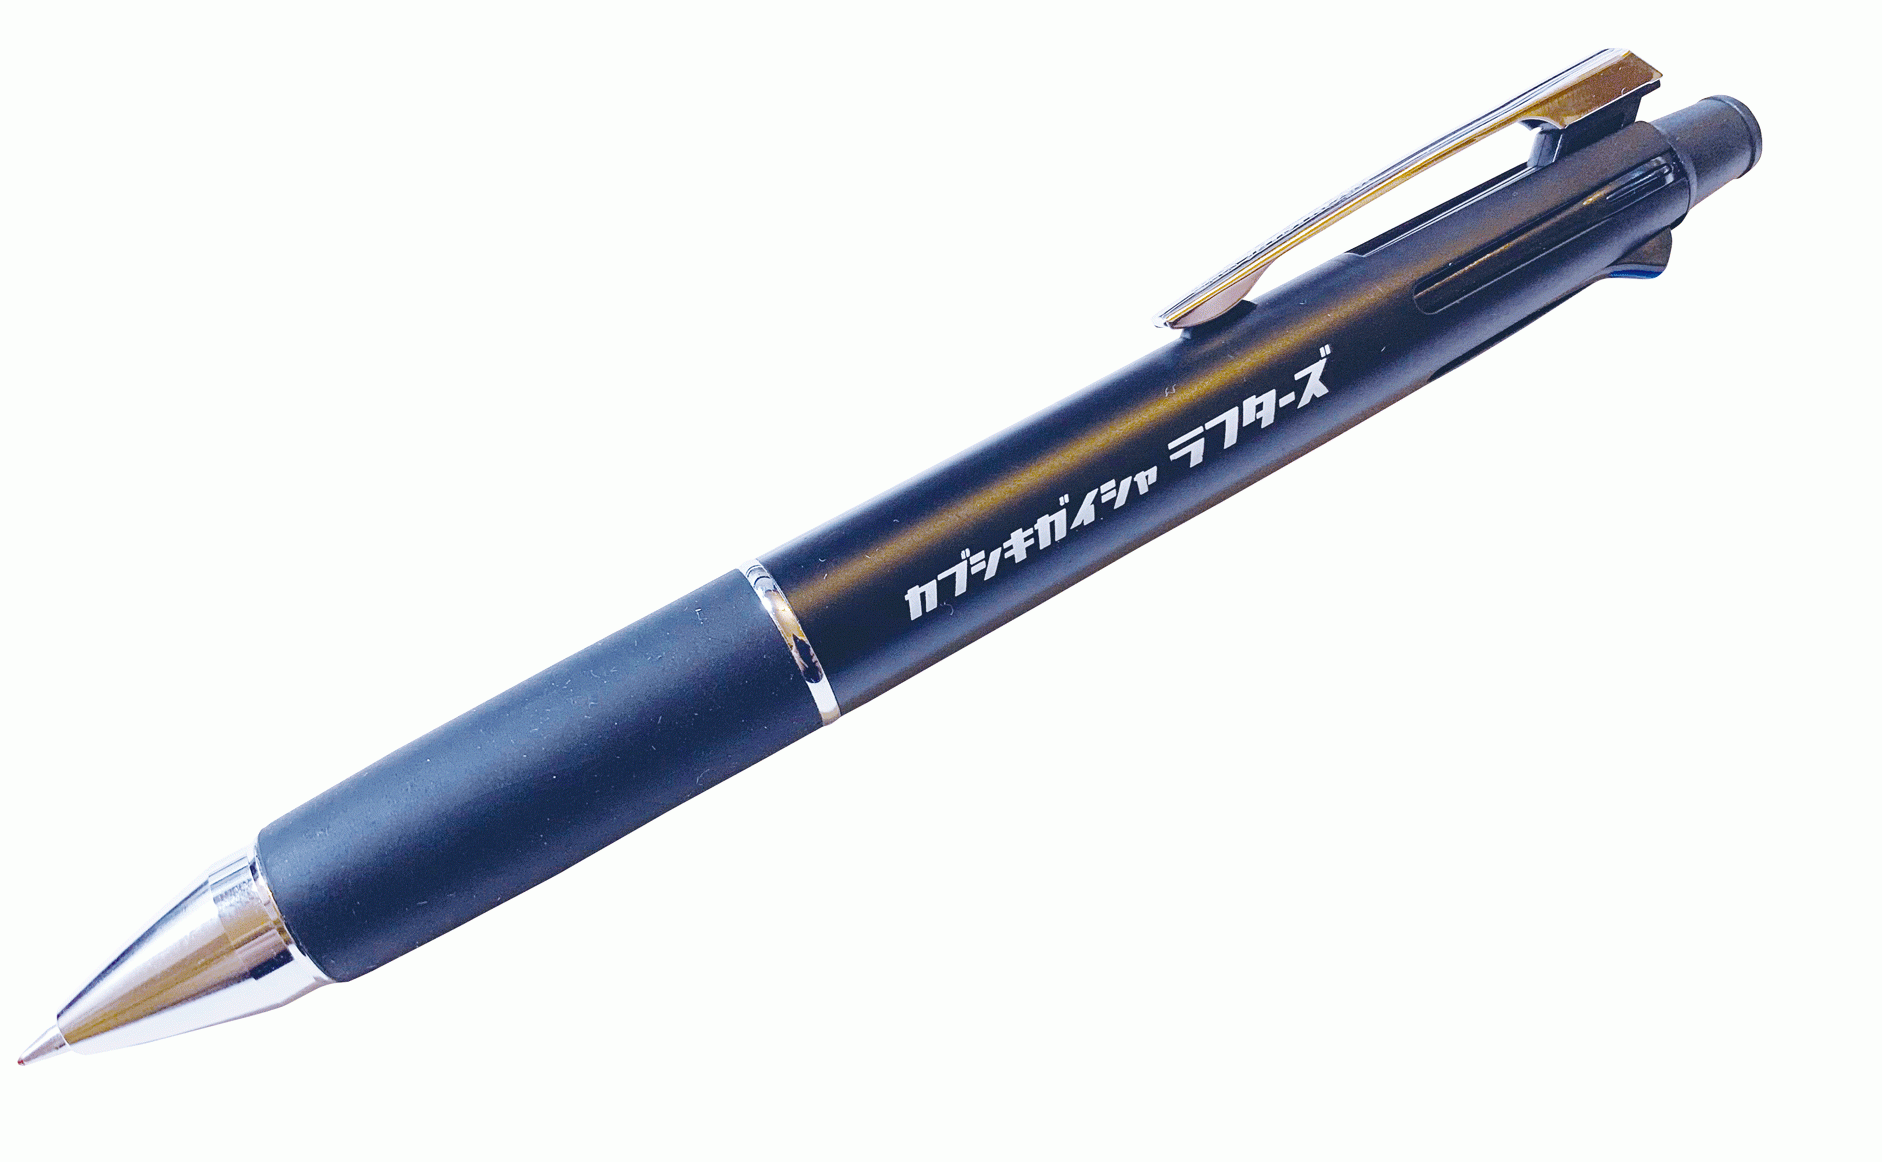 オリジナルボールペン